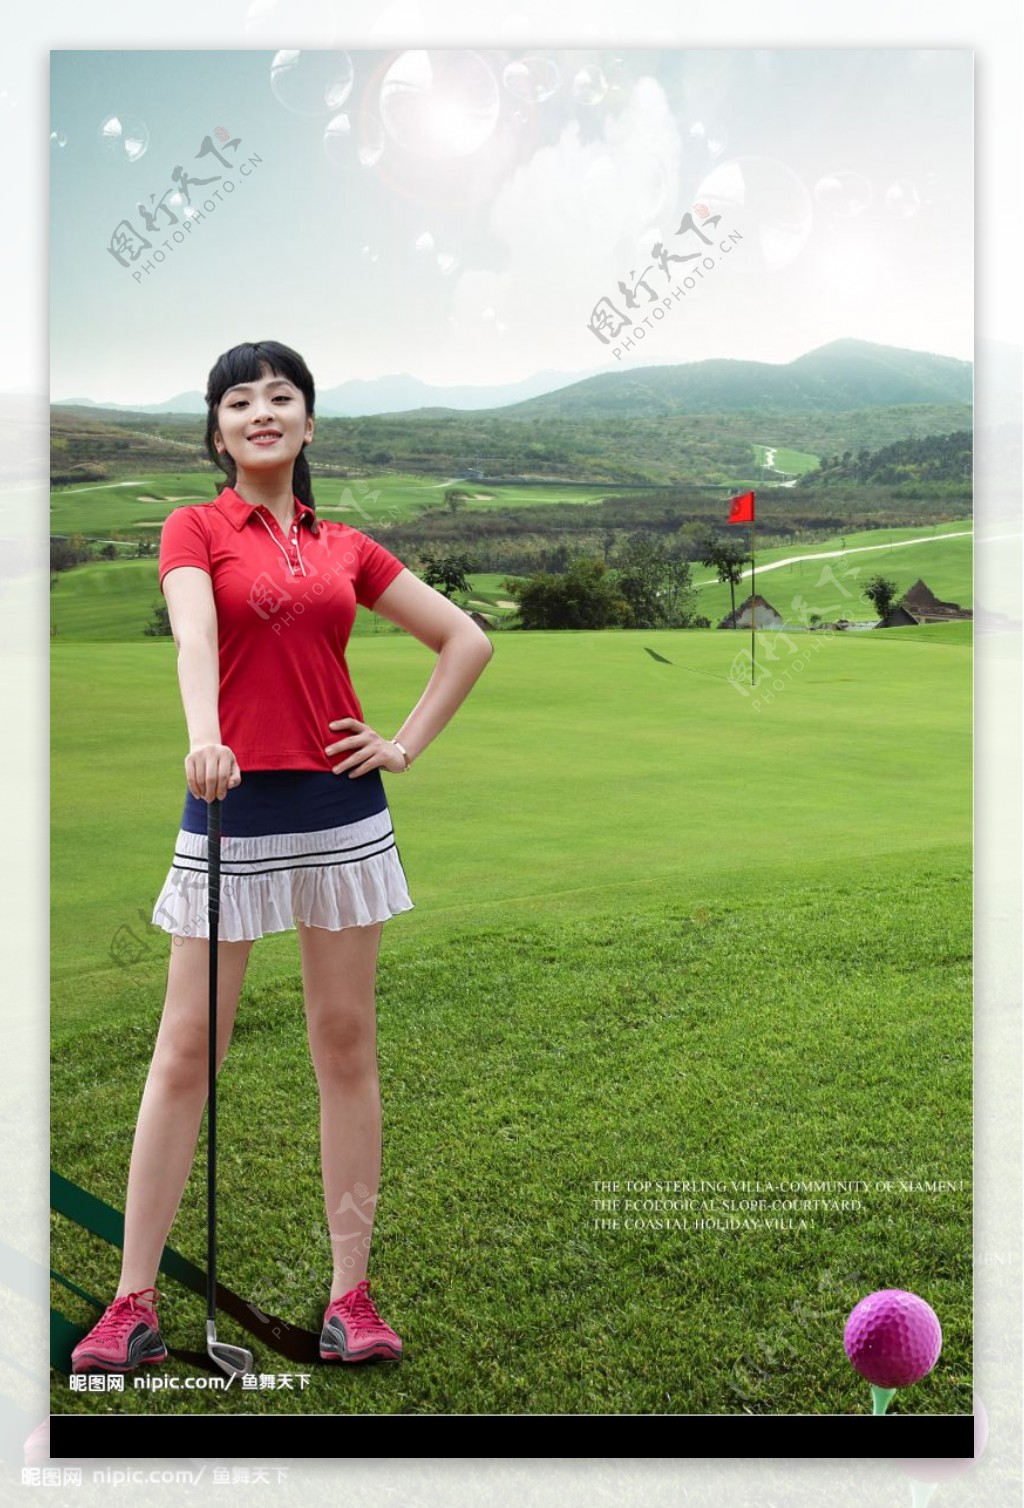 打高尔夫球的美女图片